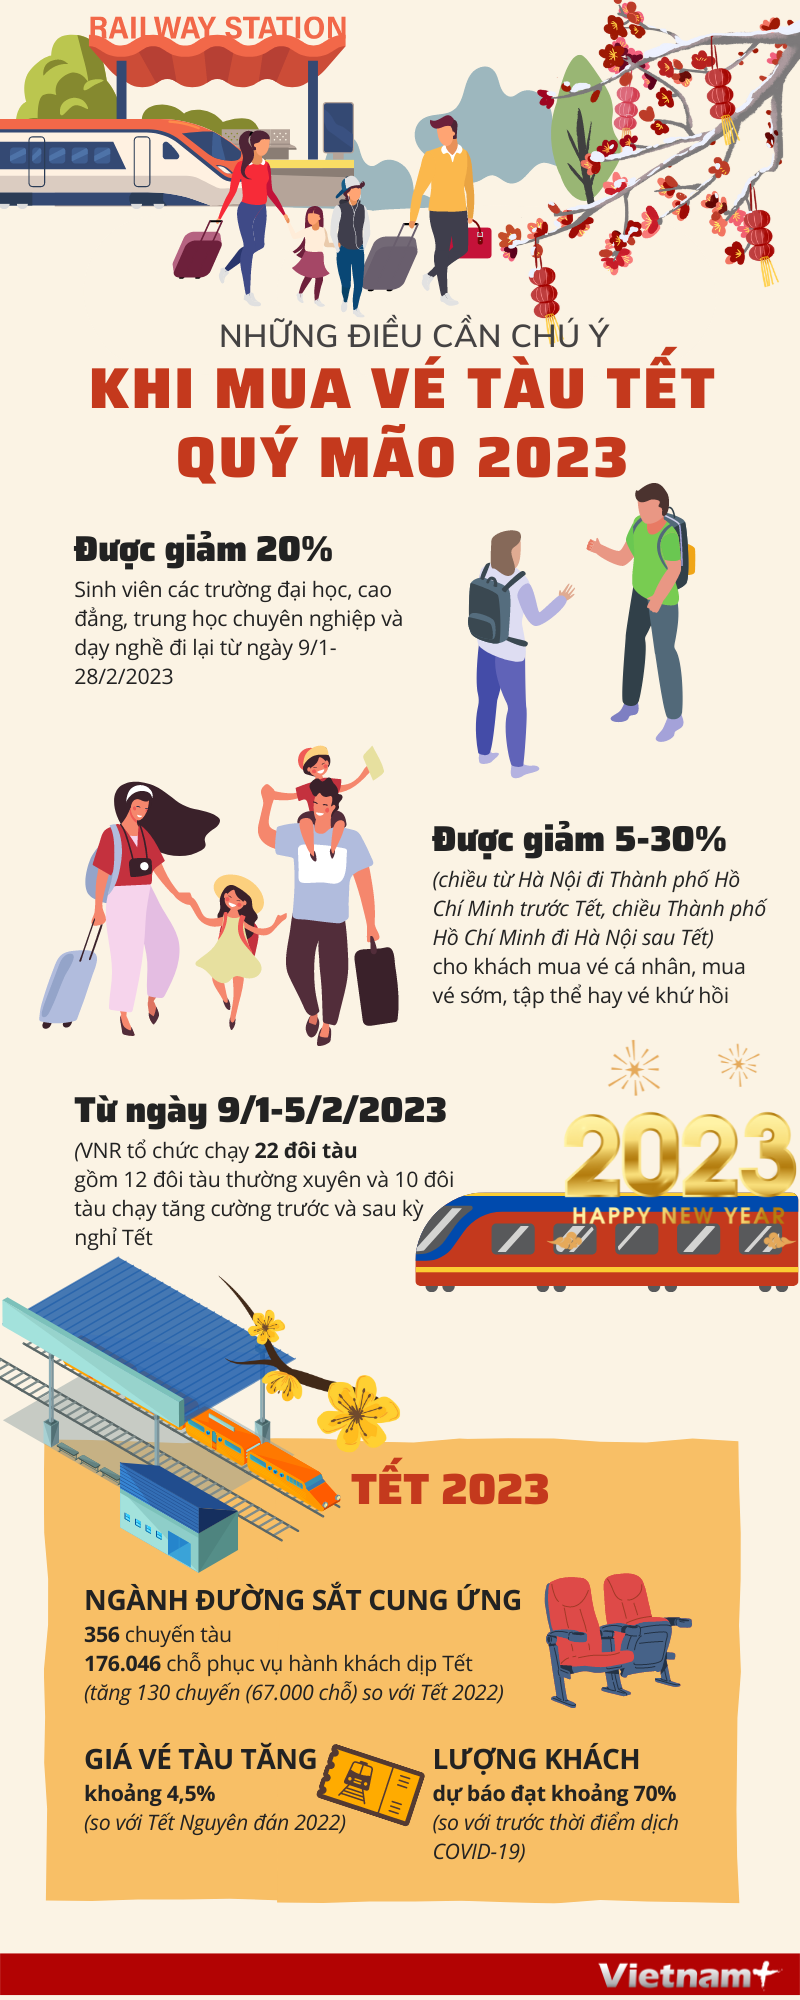 [Infographics] Nhung dieu can chu y khi mua ve tau Tet Quy Mao 2023 hinh anh 1